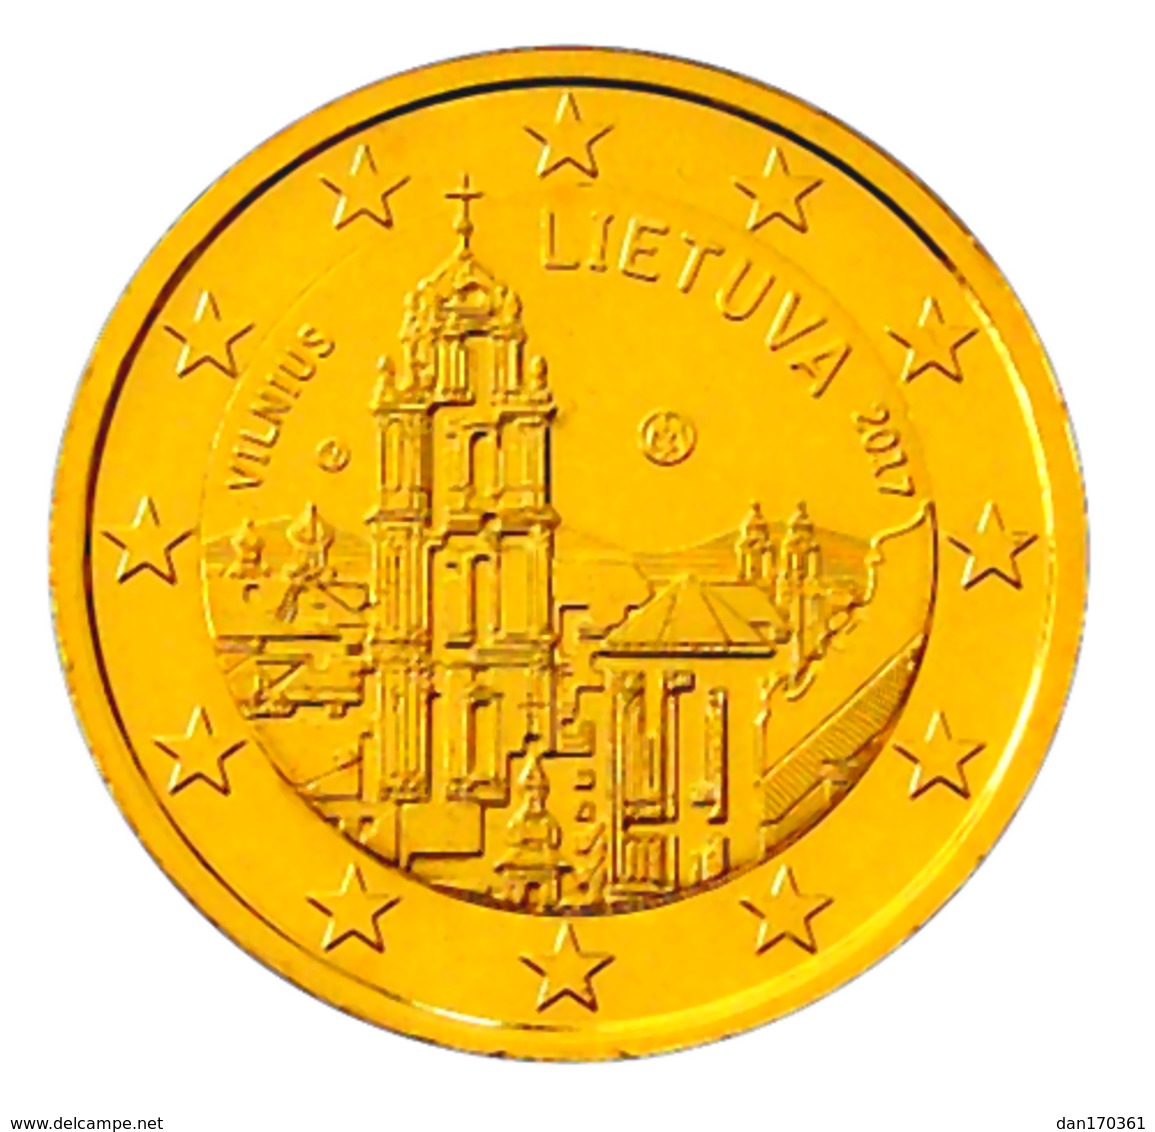 LITUANIE 2017 - 2 EUROS COMMEMORATIVE - VILNIUS -  PLAQUE OR - Lituanie